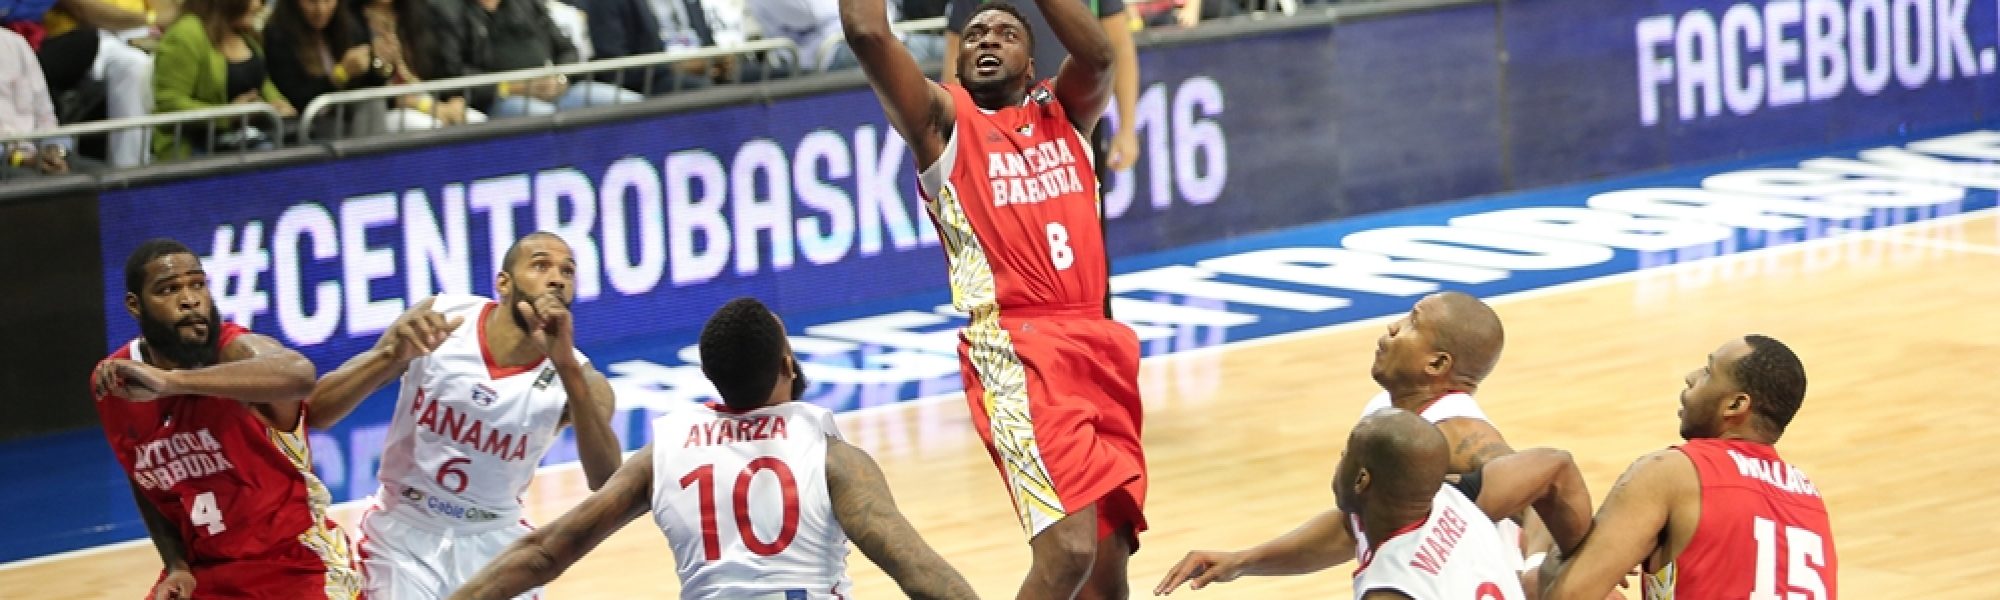 Centrobasket 2016